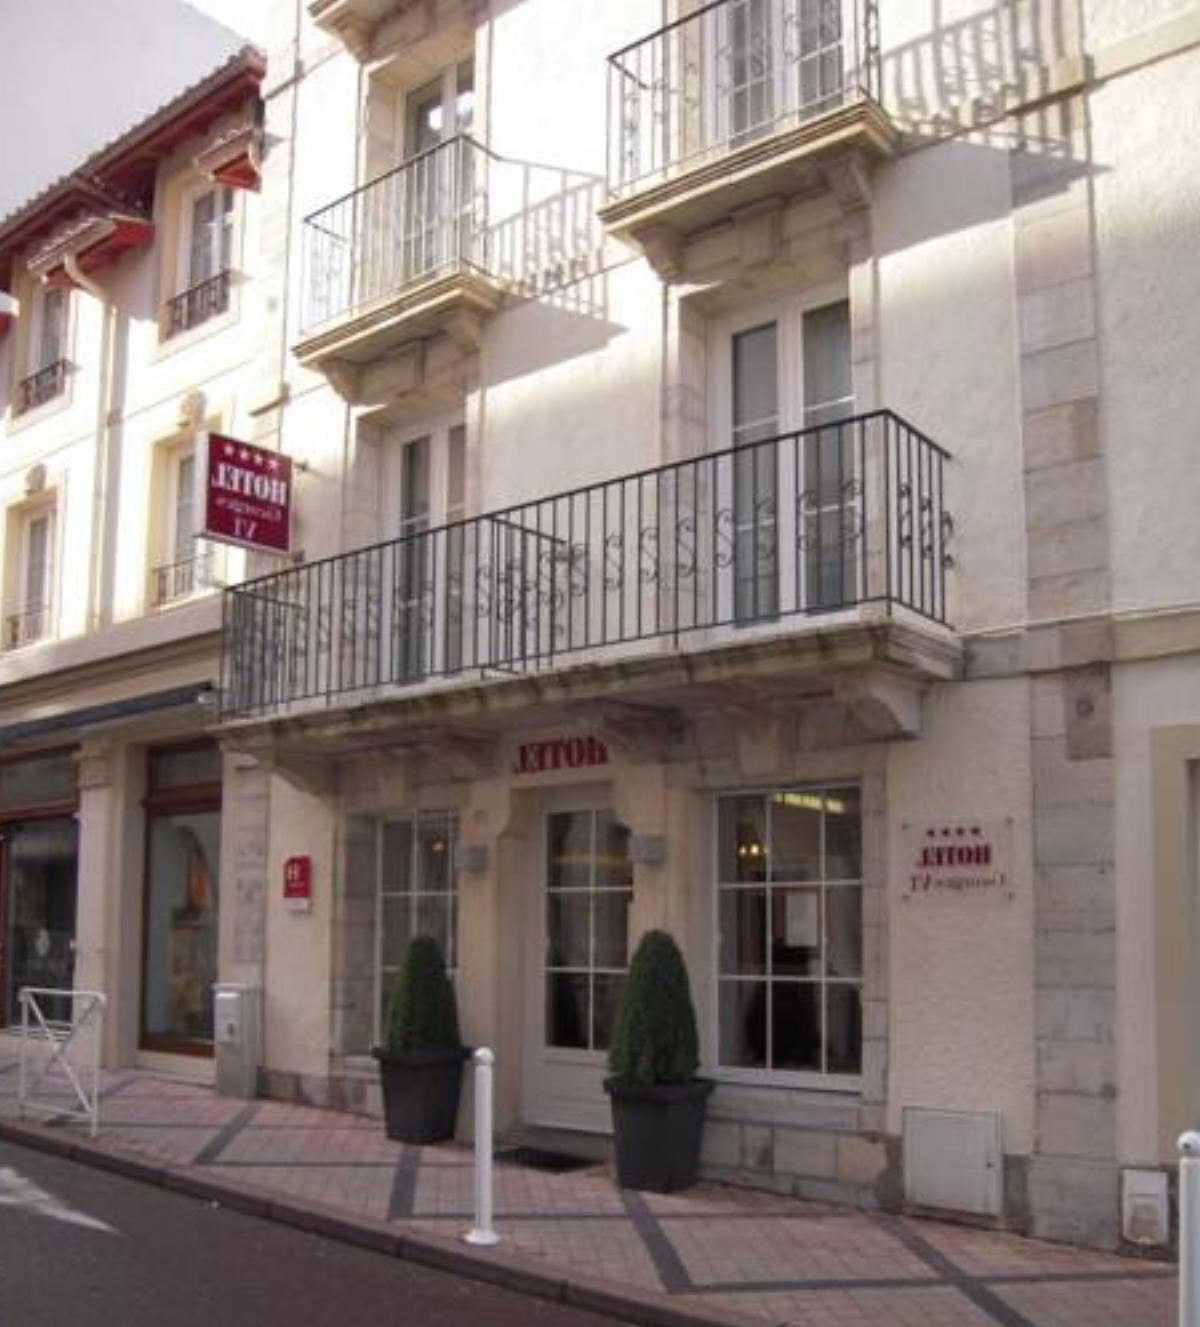 Hôtel Georges VI Hotel Biarritz France